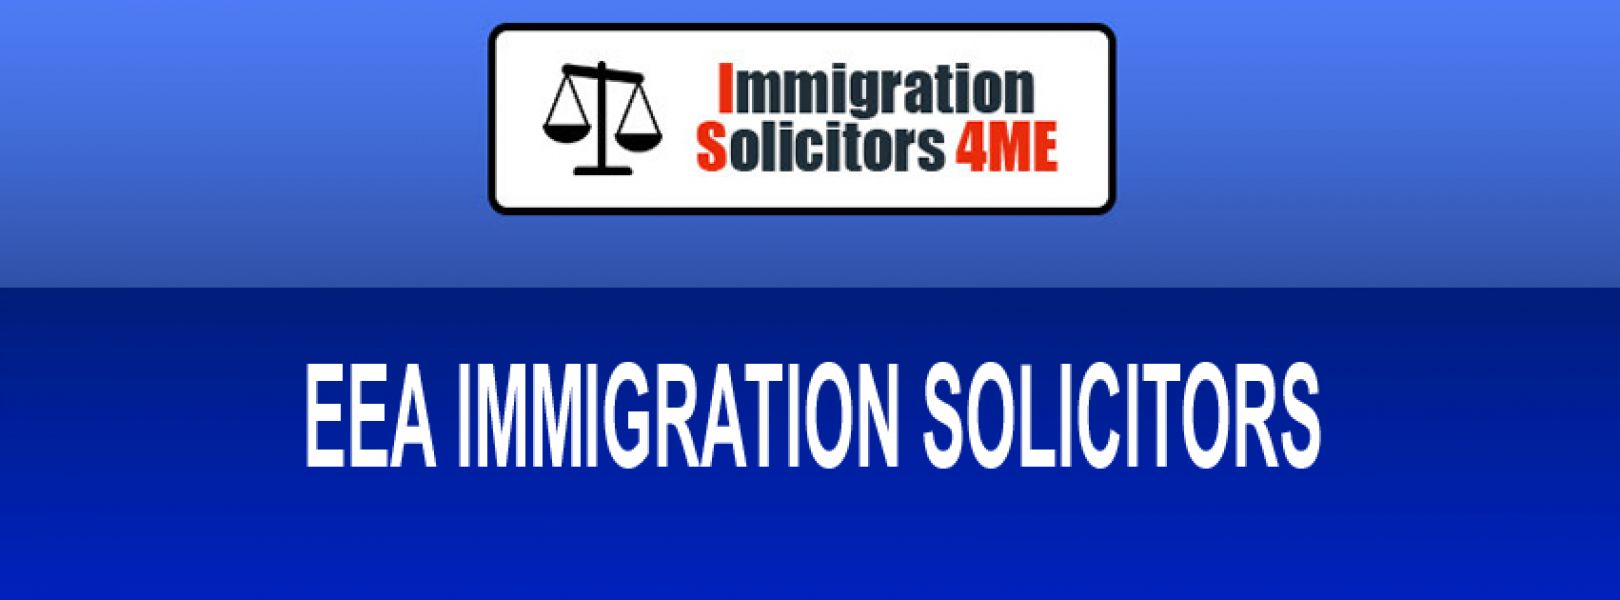 EEA Immigration Solicitors